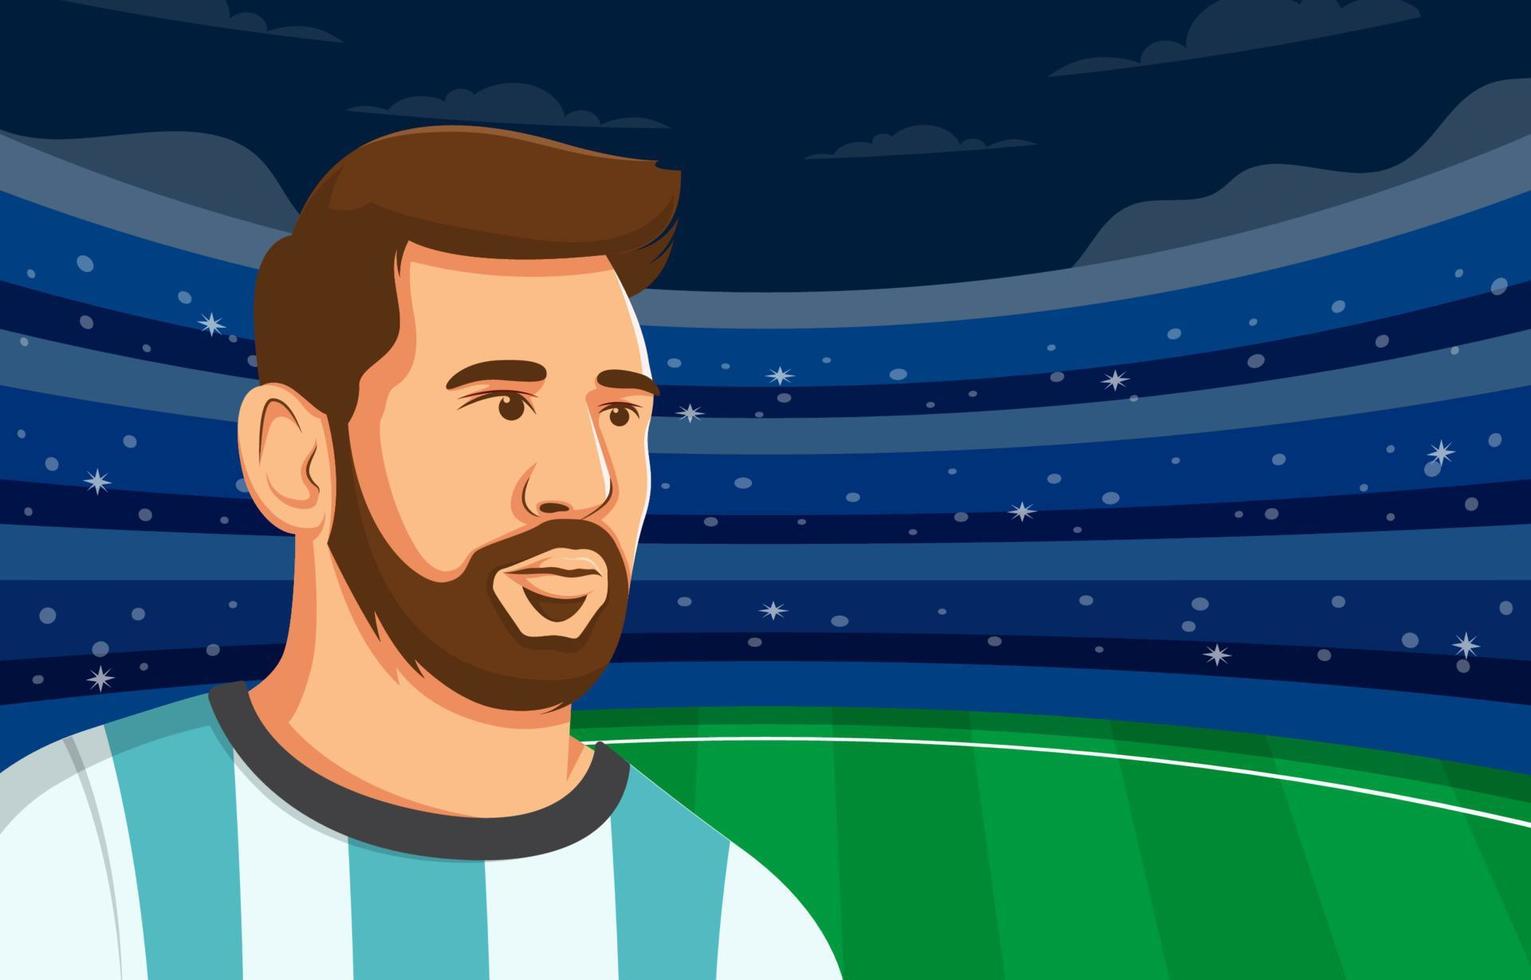 Lionel Messi in Stadium Background vector